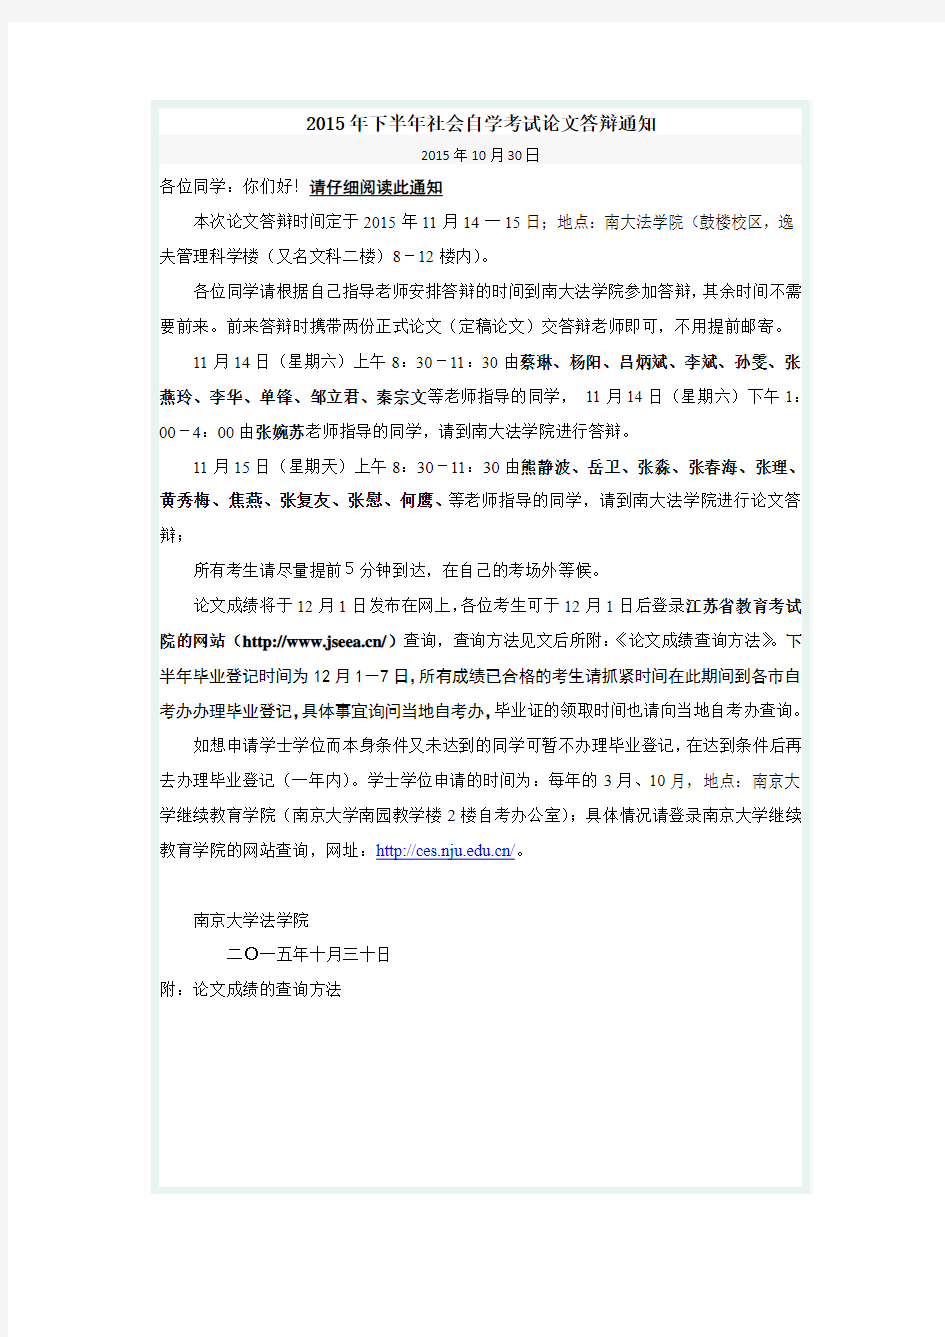 南京大学法学院2015年下半年社会自学考试论文答辩通知